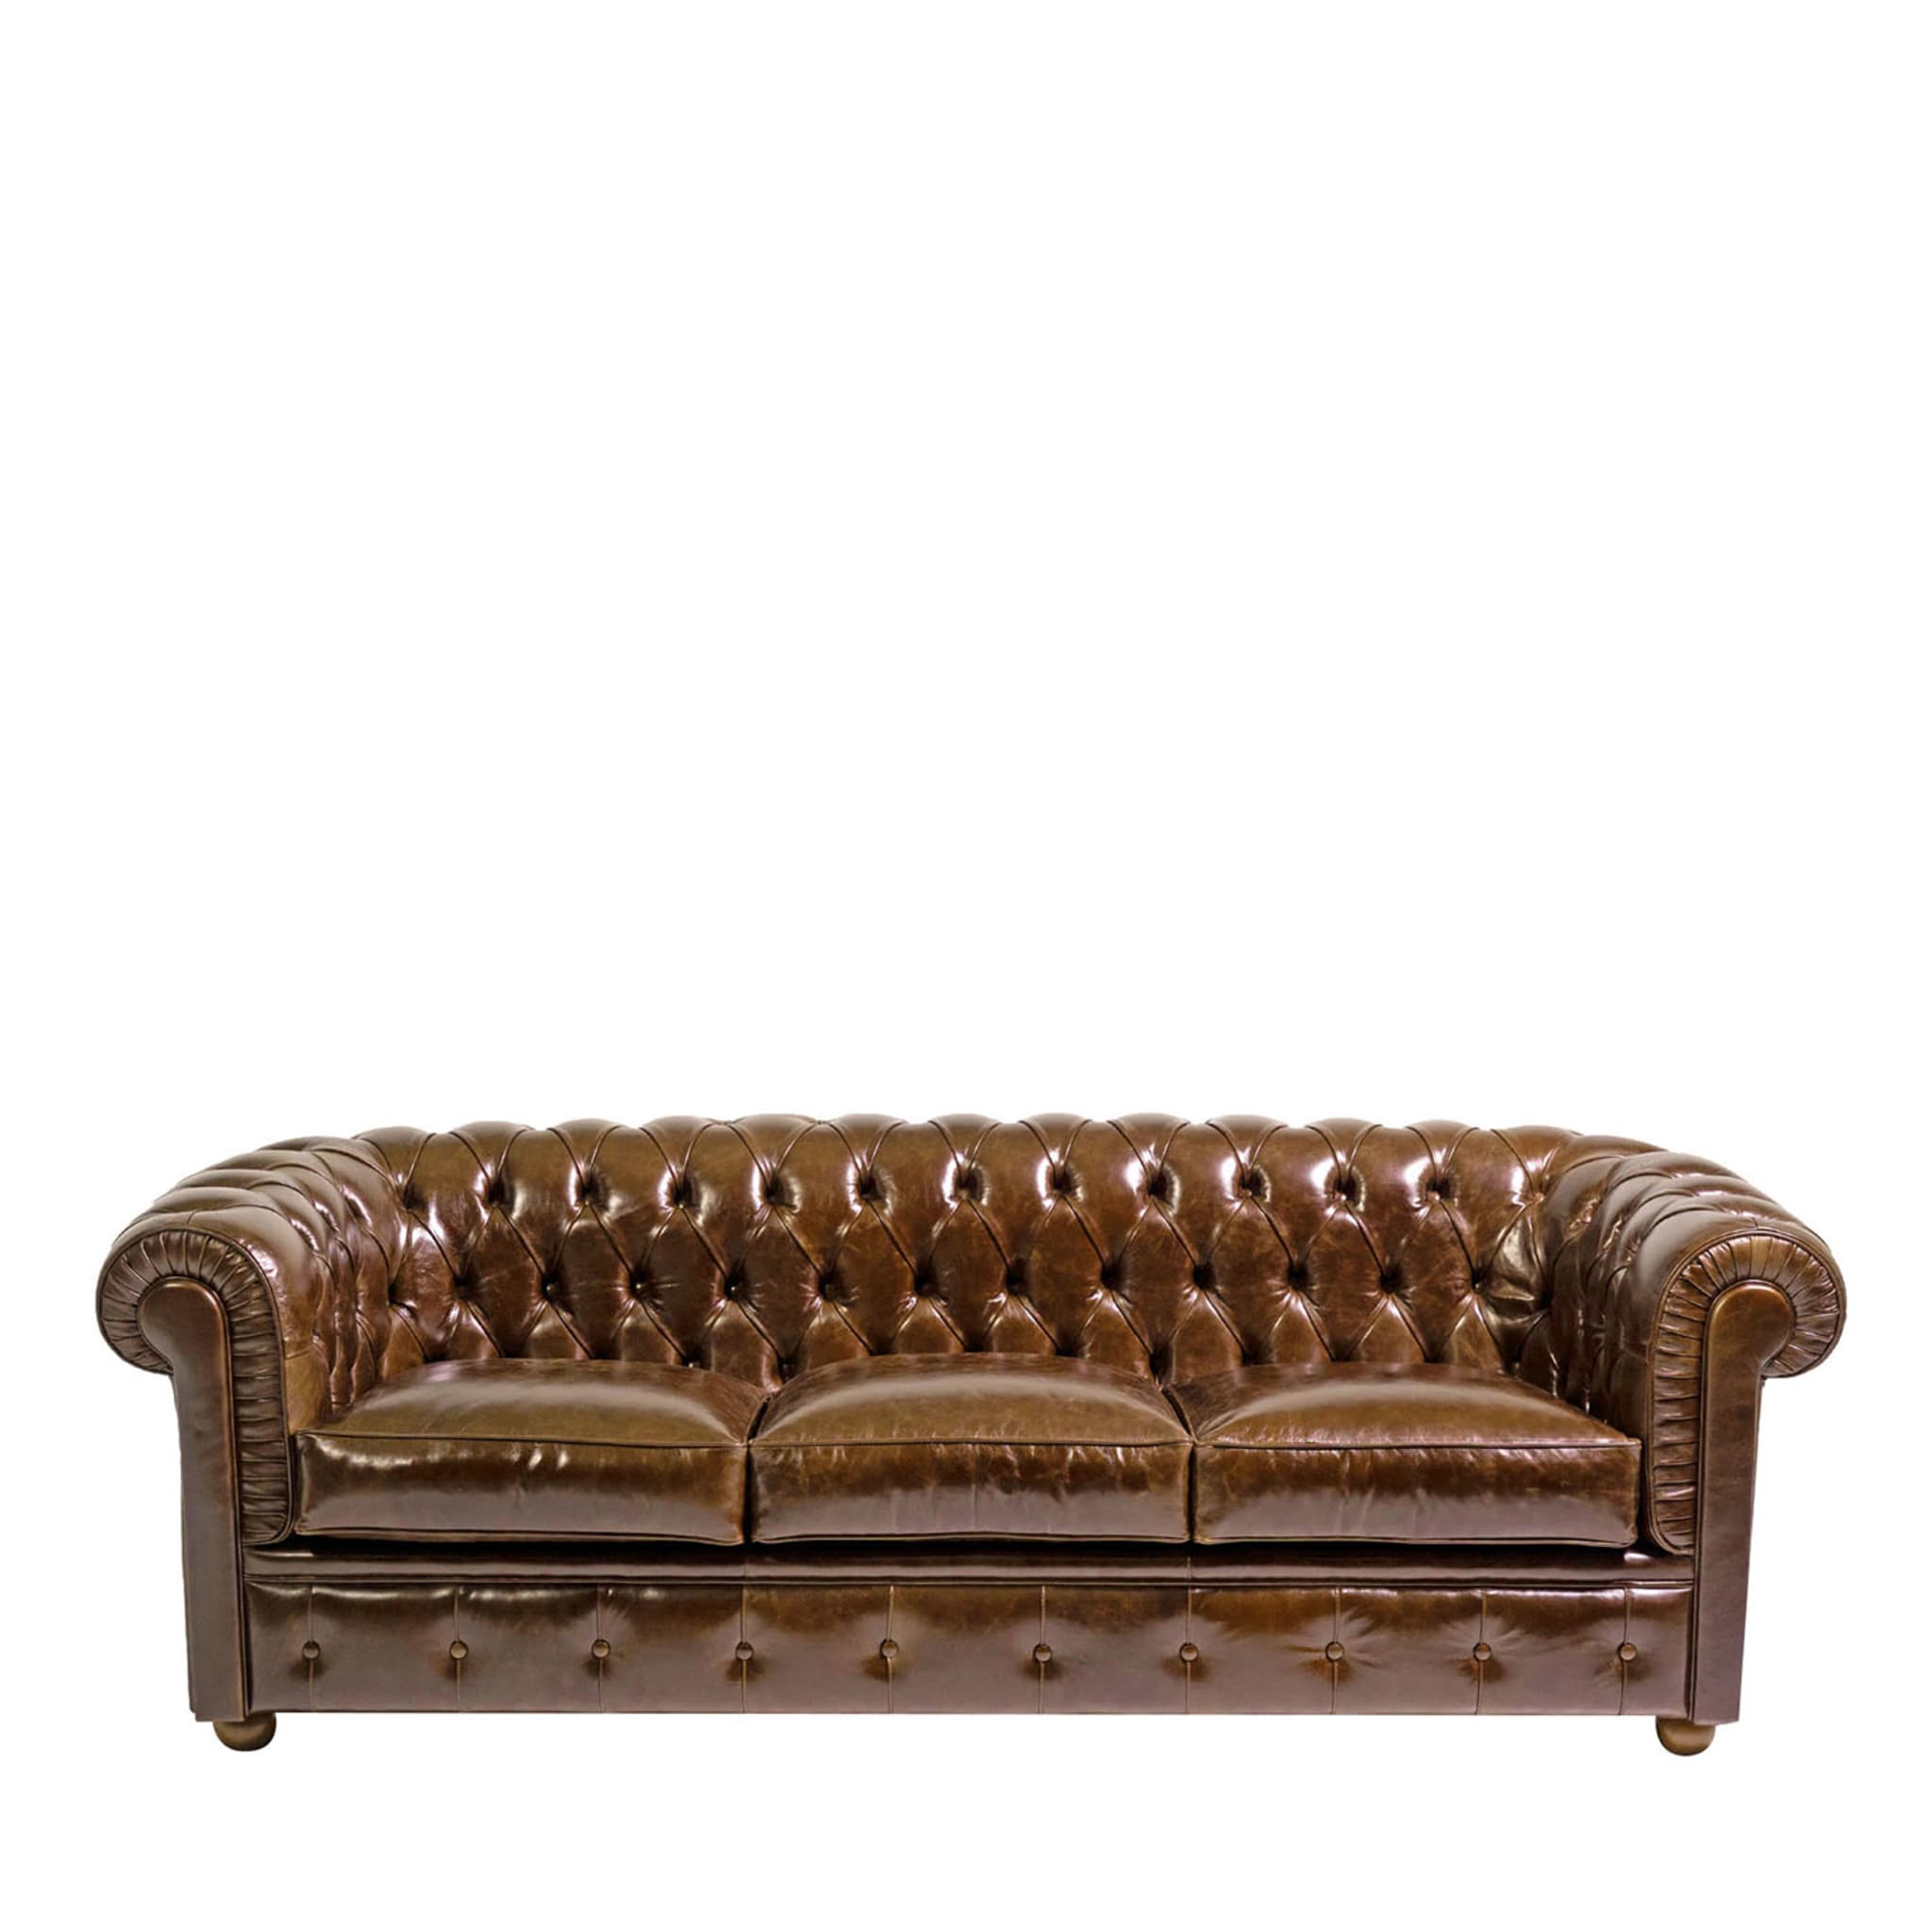 Chesterfield Braunes Leder 3-Sitzer Sofa Tribeca Kollektion - Hauptansicht